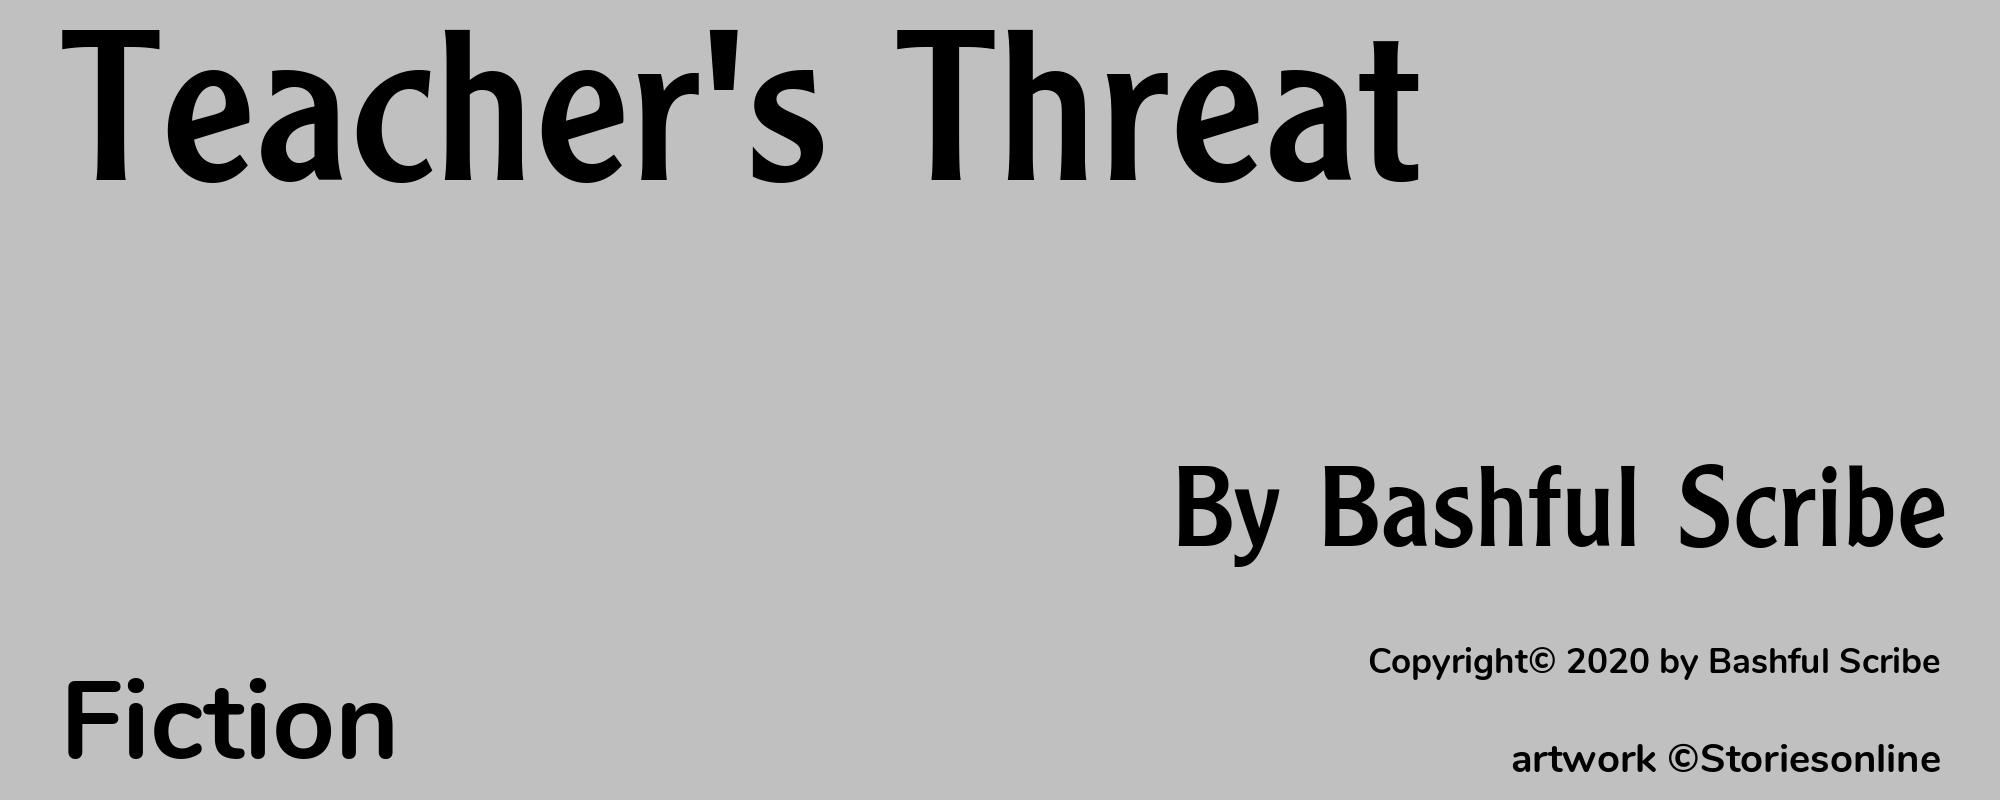 Teacher's Threat - Cover